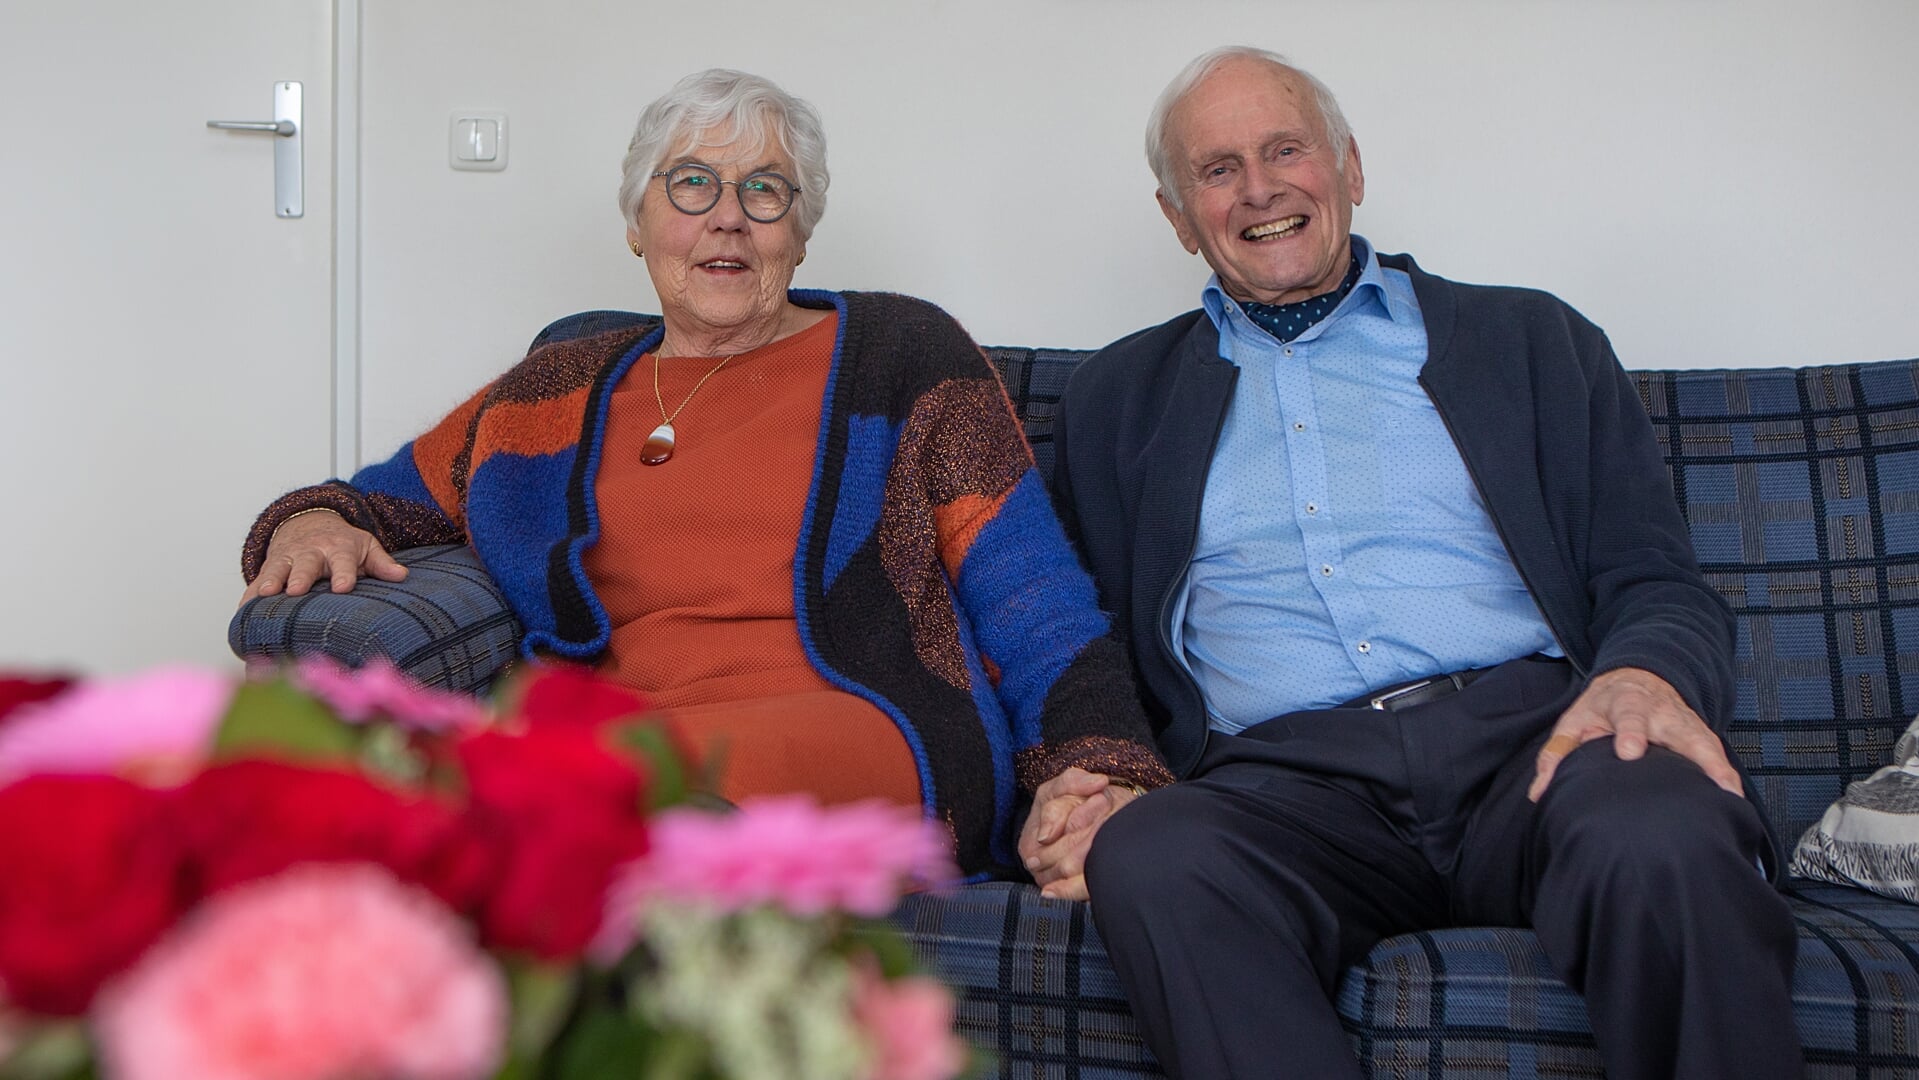 Nel en Cor waren op 13 maart precies 60 jaar getrouwd.